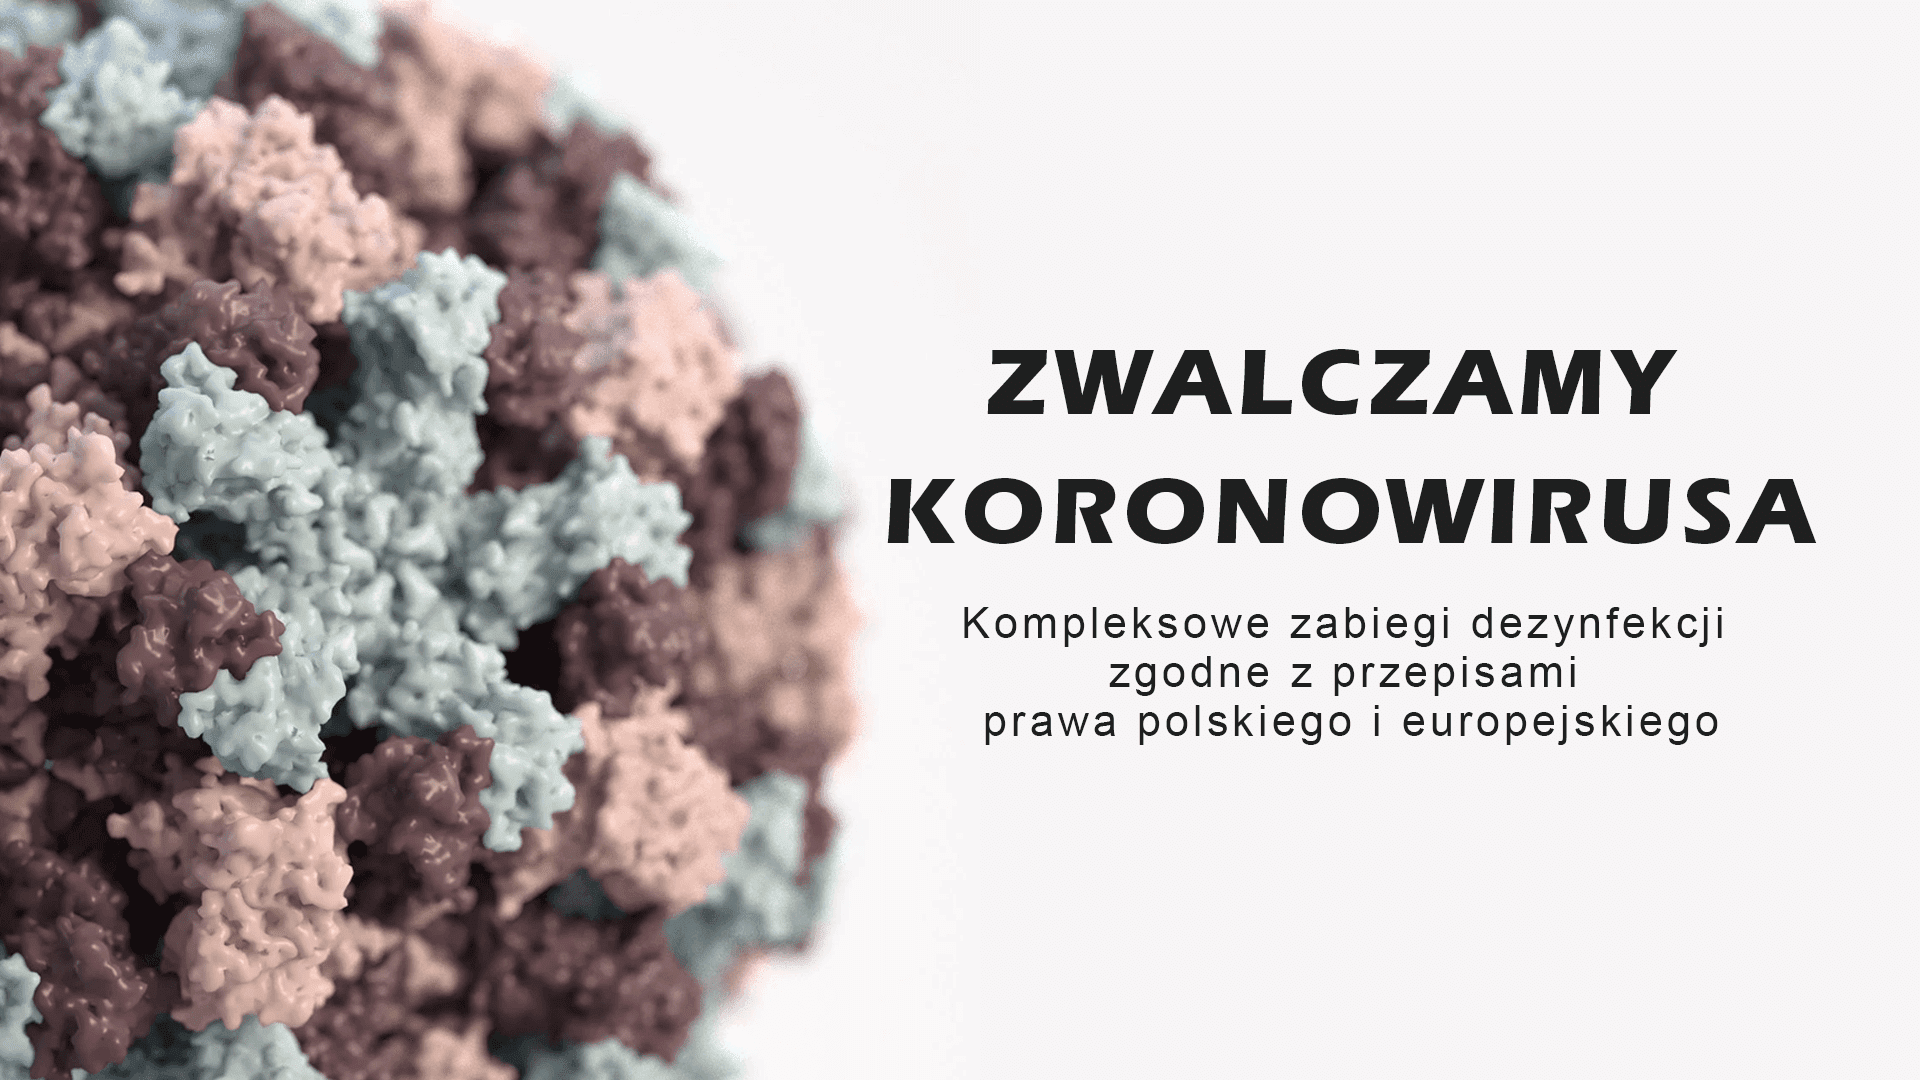 Kompleksowe zabiegi dezynfekcji zgodne z przepisami prawa polskiego i europejskiego